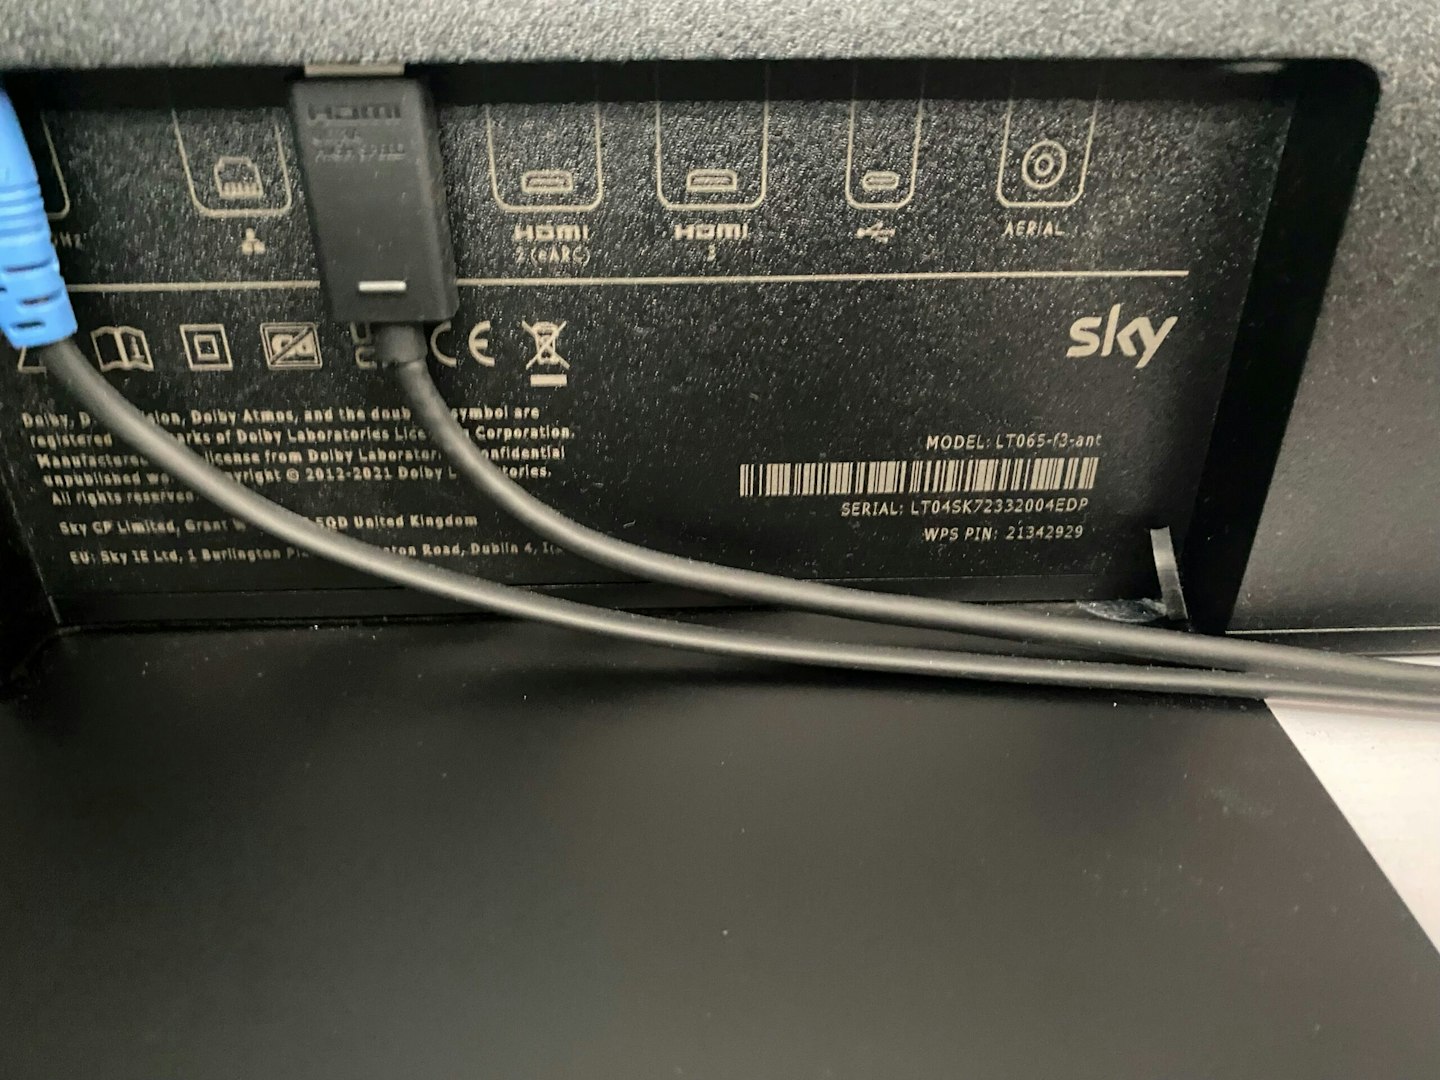 Sky Glass TV ports